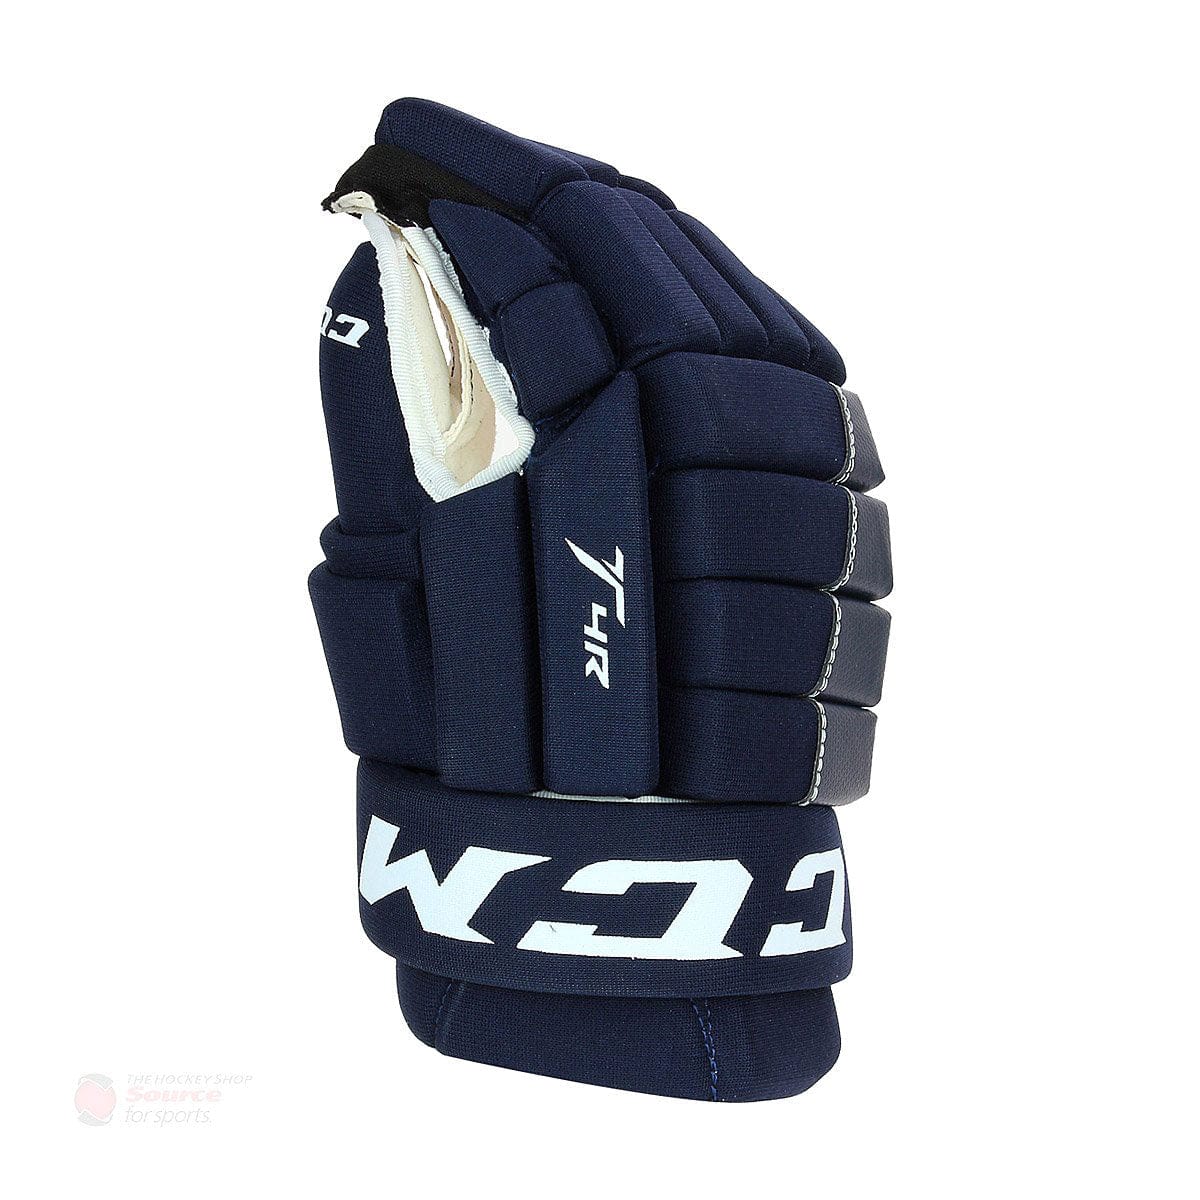 CCM Tacks 4R Senior Hockey Gloves (2017)